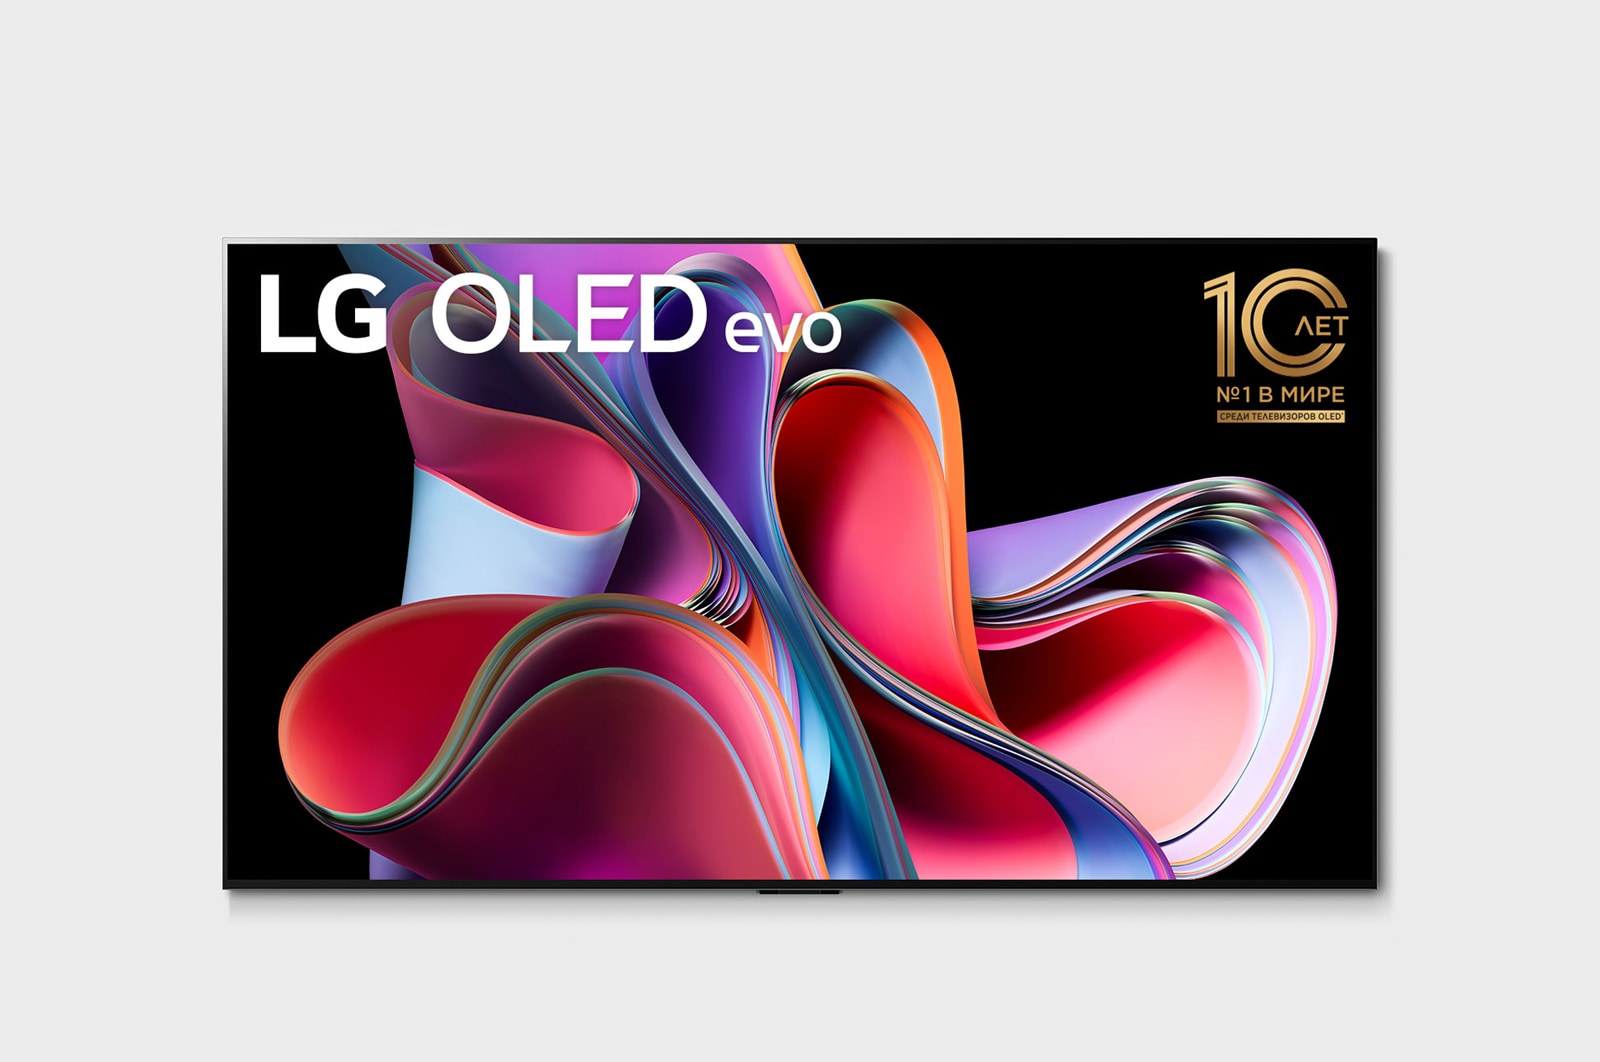 LG 4K Ultra HD OLED телевизор 65'' LG OLED65G3RLA, Вид спереди LG OLED evo серии Gallery, OLED65G3RLA